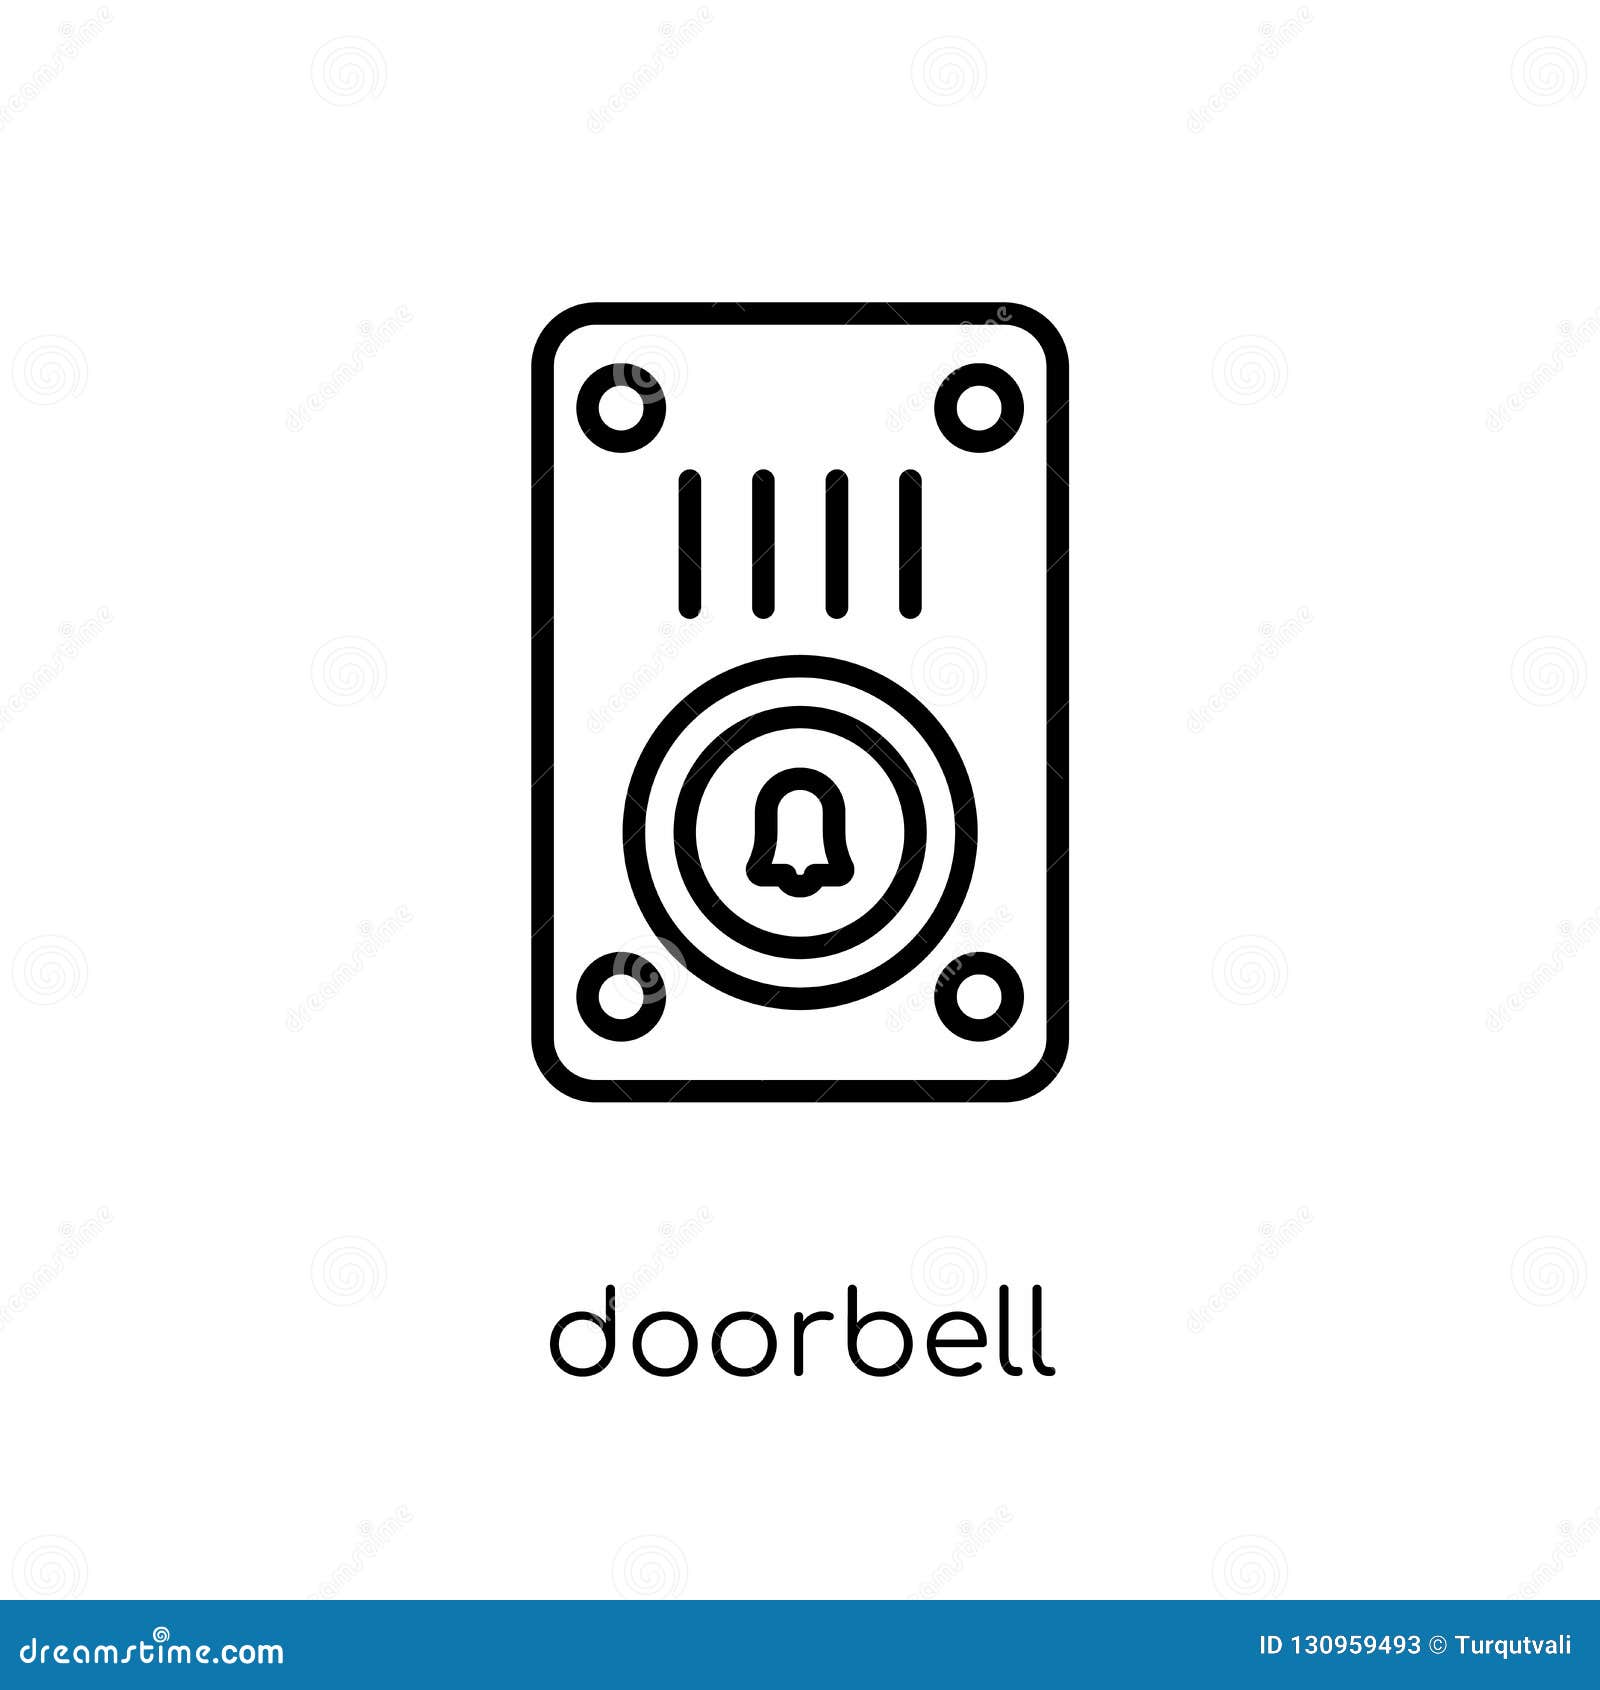 doorbell clipart